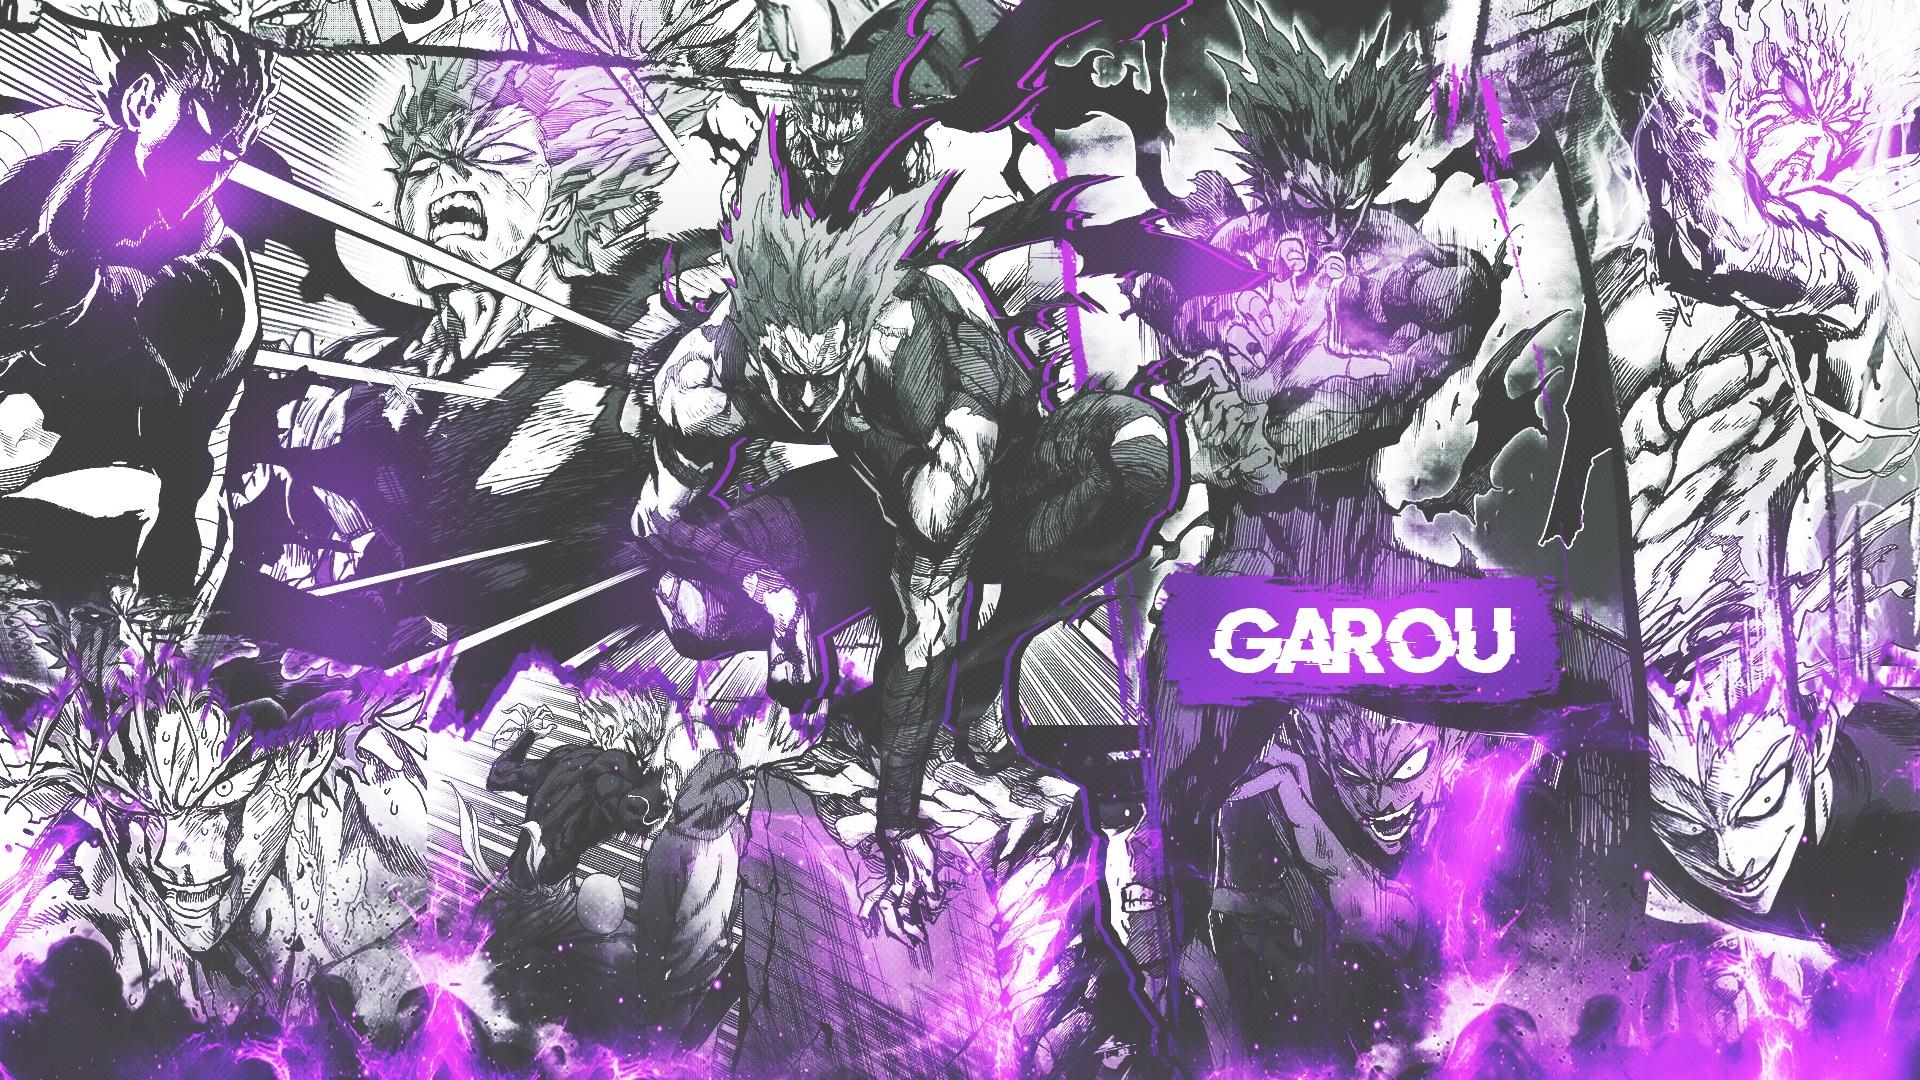 Cosmic Garou wallpaper by Technofire123 - Download on ZEDGE™